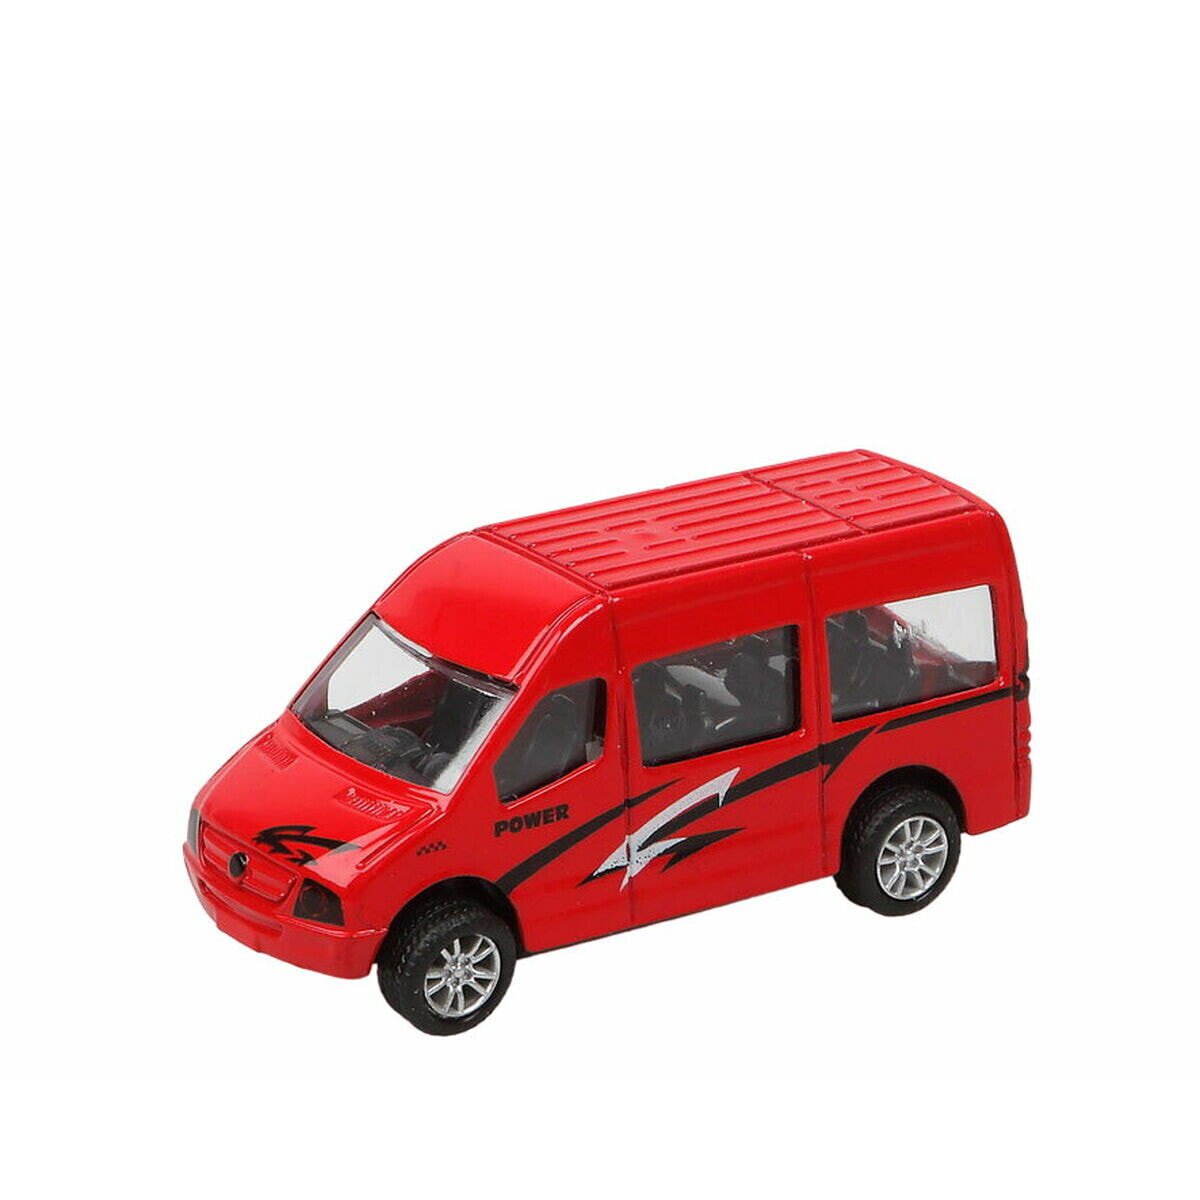 Автомобиль Power Van 10 x 5 cm